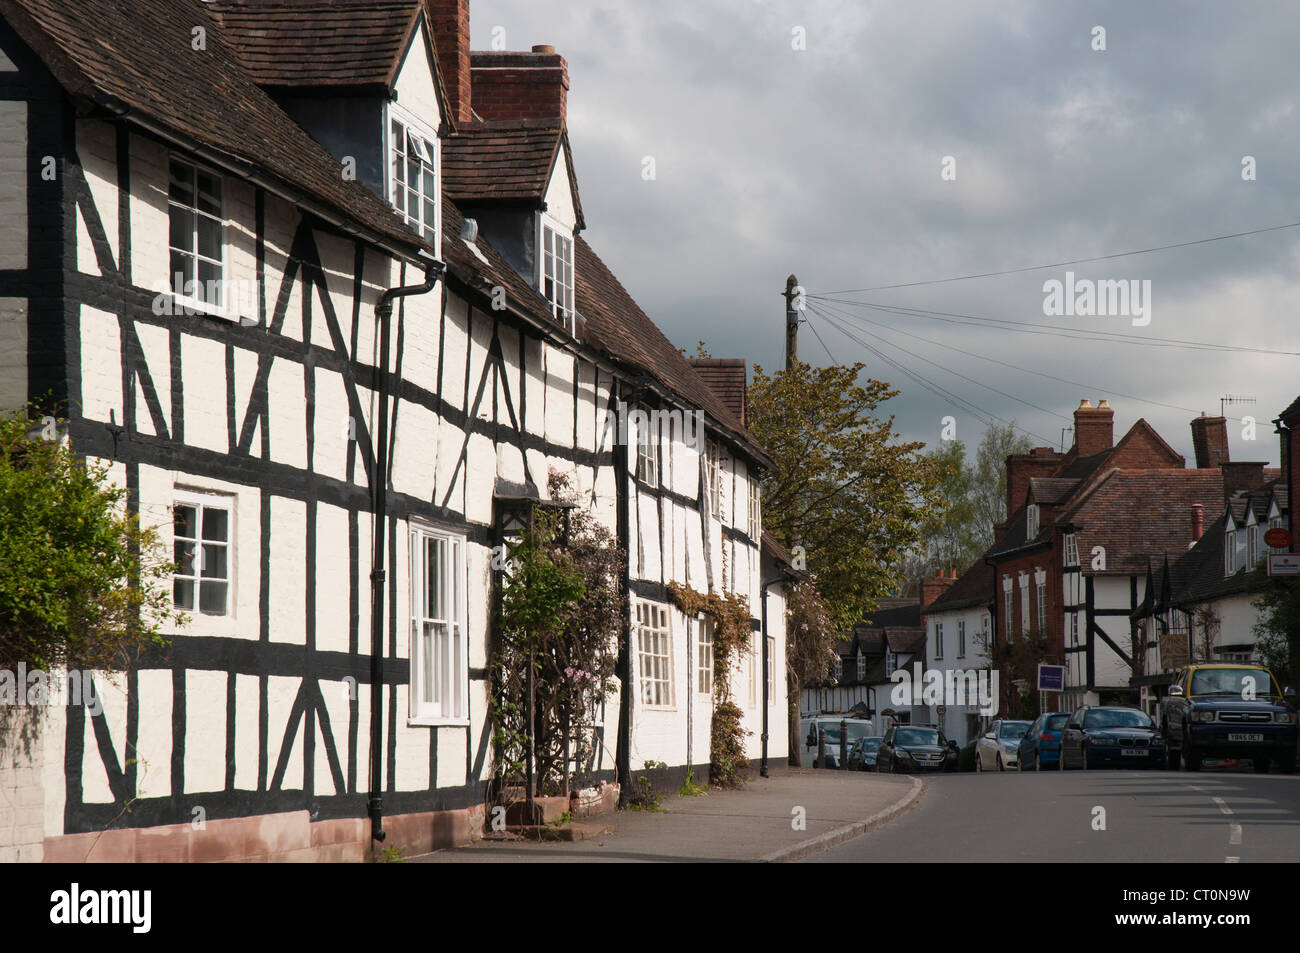 Une rue bordée de maisons à colombage en Chaddesley Corbett dans les Midlands anglais Banque D'Images